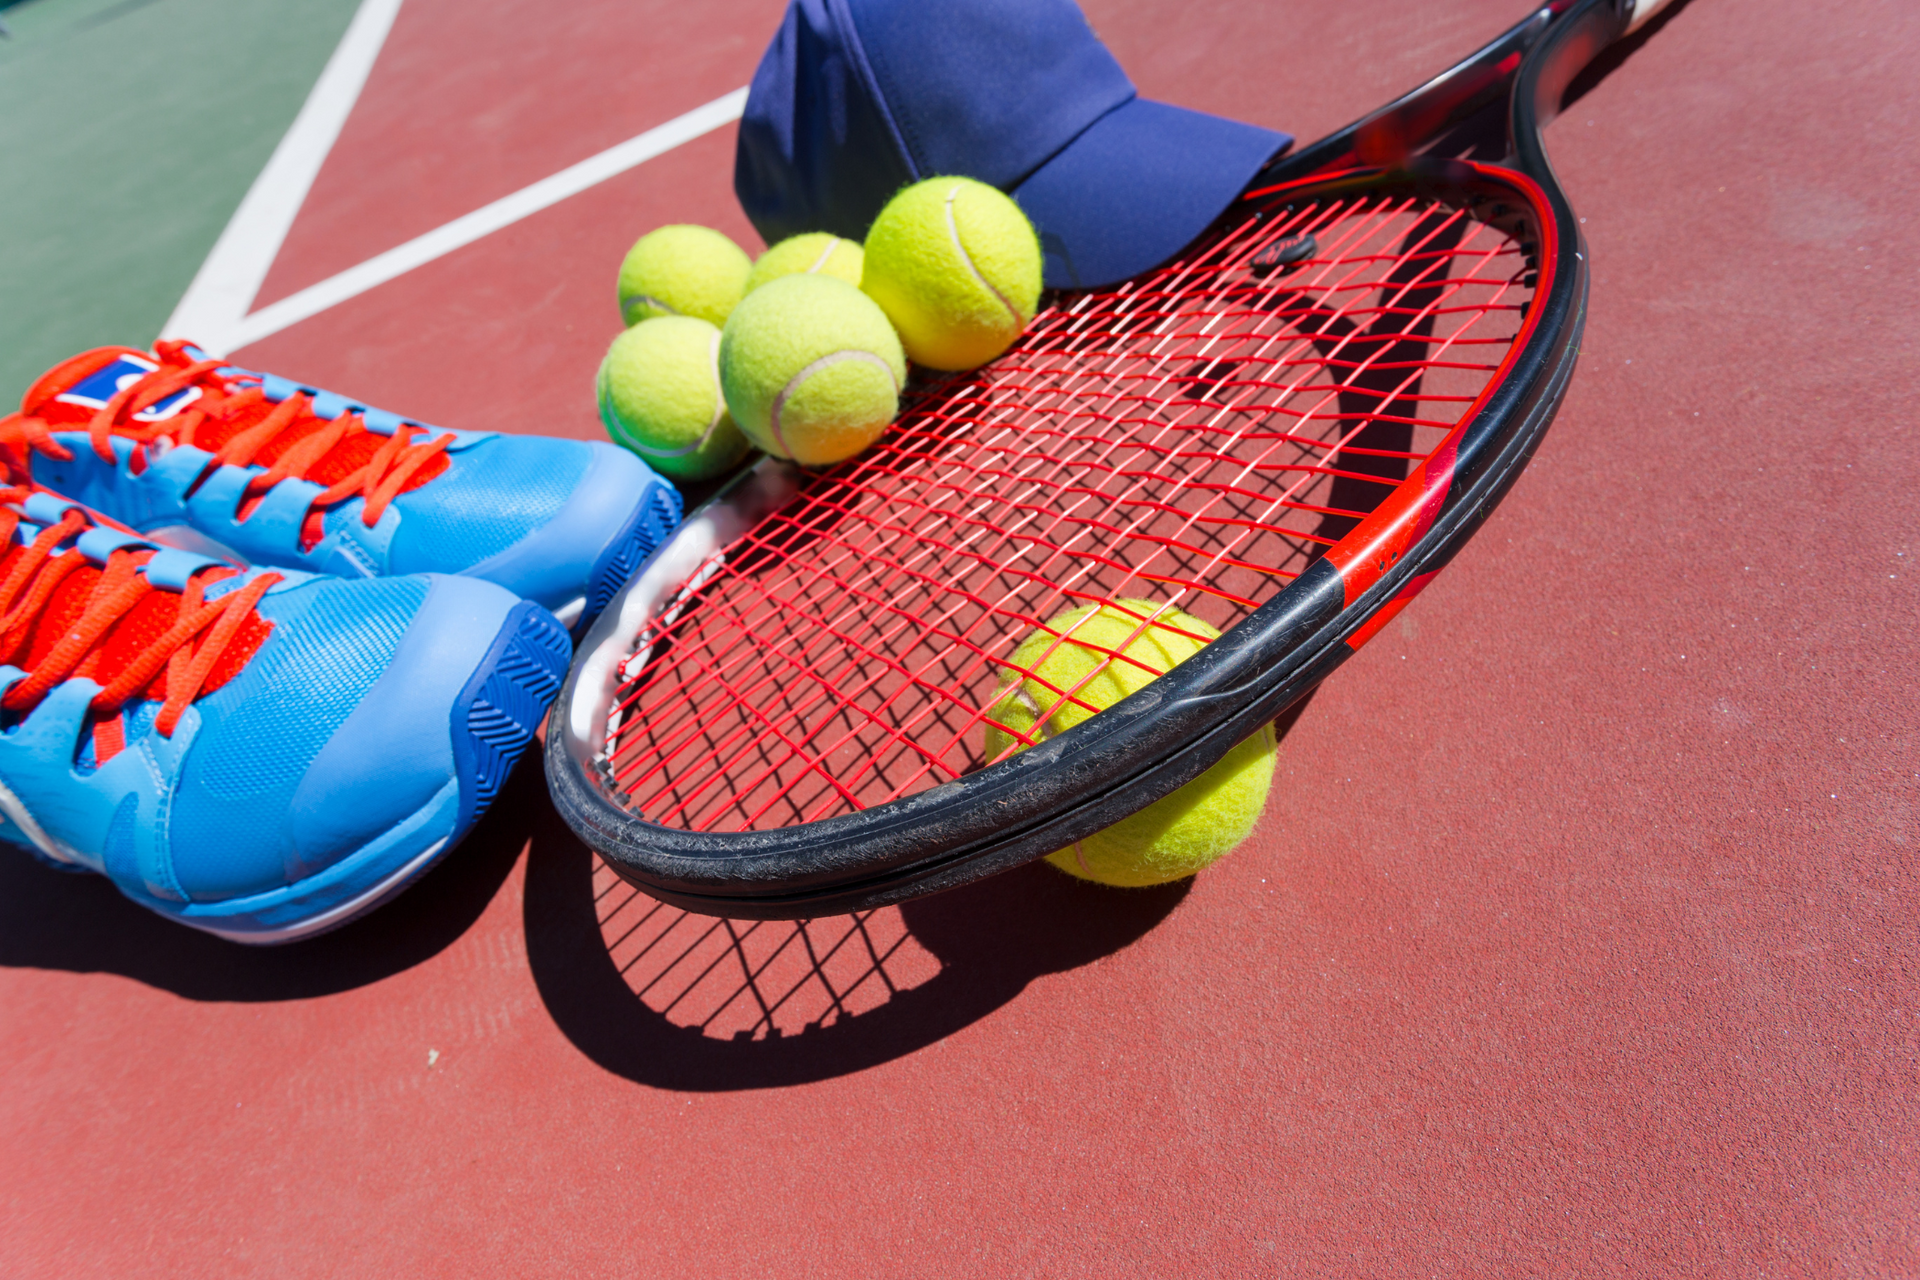 Tennisausrüstung aus Schuhen, Schläger, Tennisbällen und Kappe